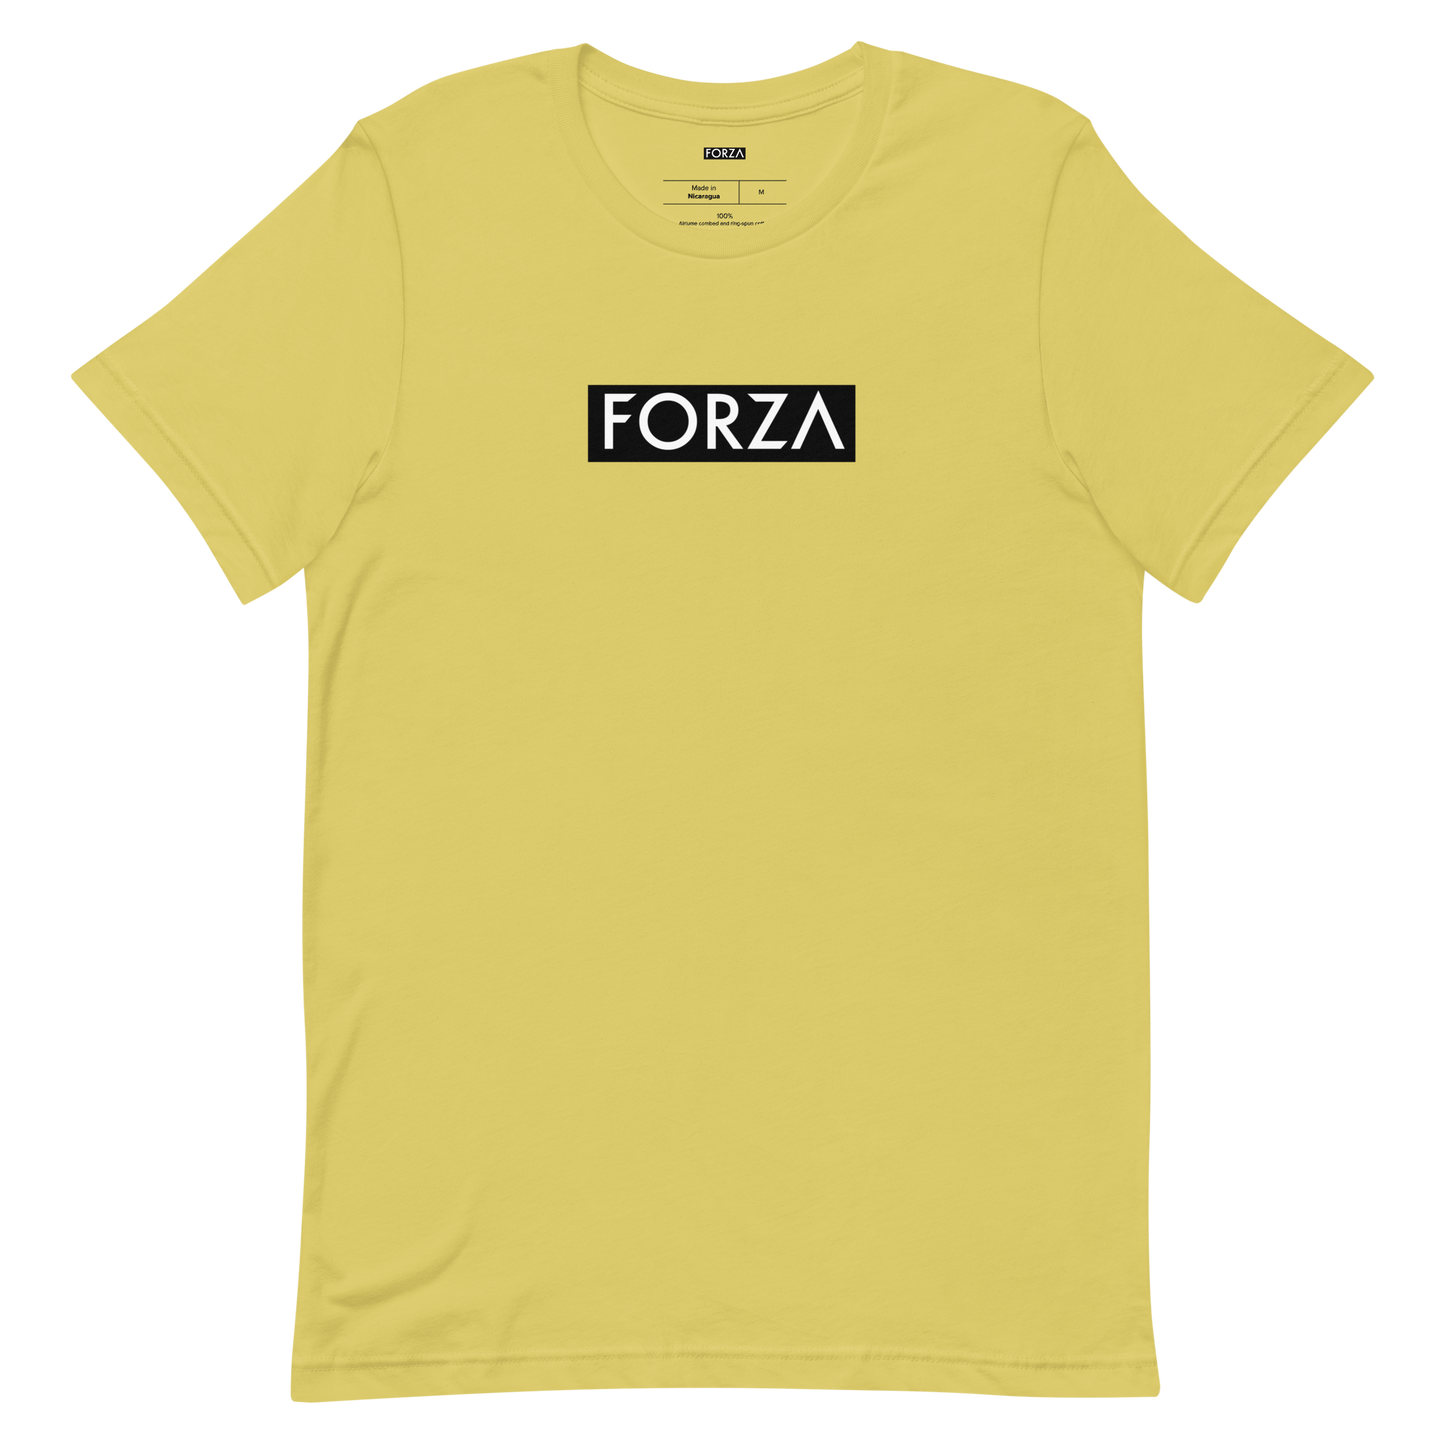 Forza Short-Sleeve Unisex T-Shirt